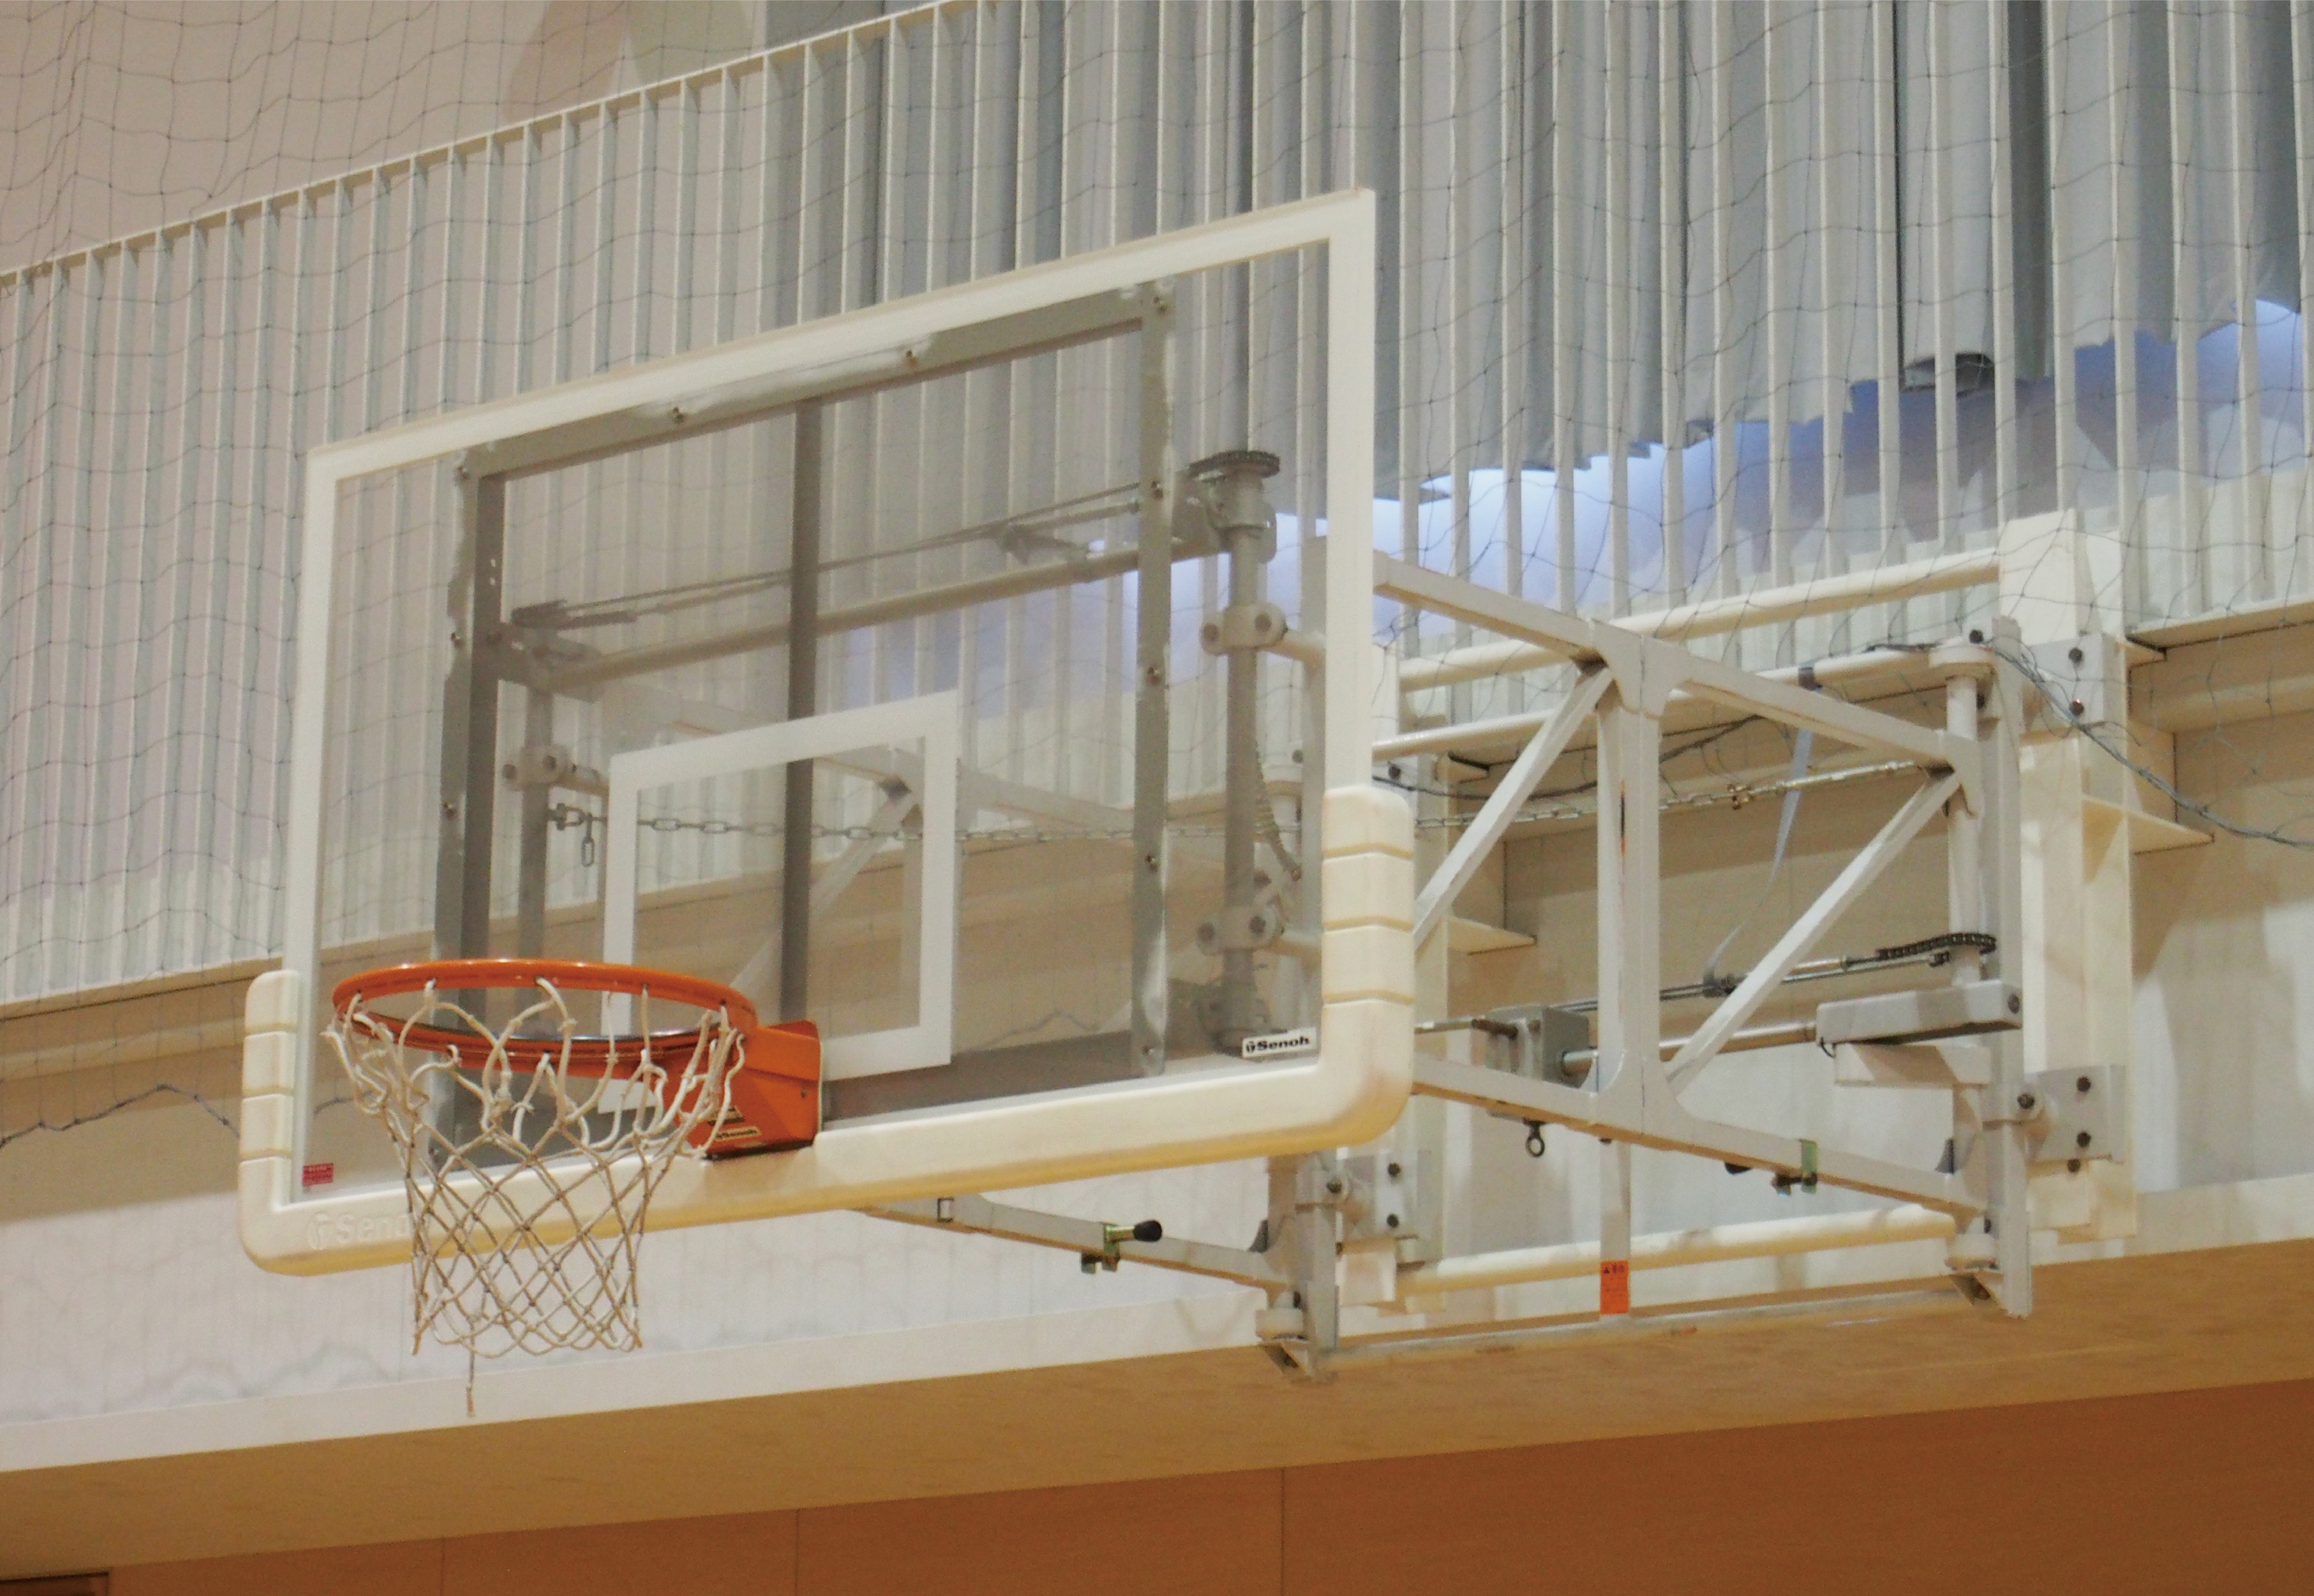 アジア初、セノーの壁面固定折畳式バスケットゴールが国際